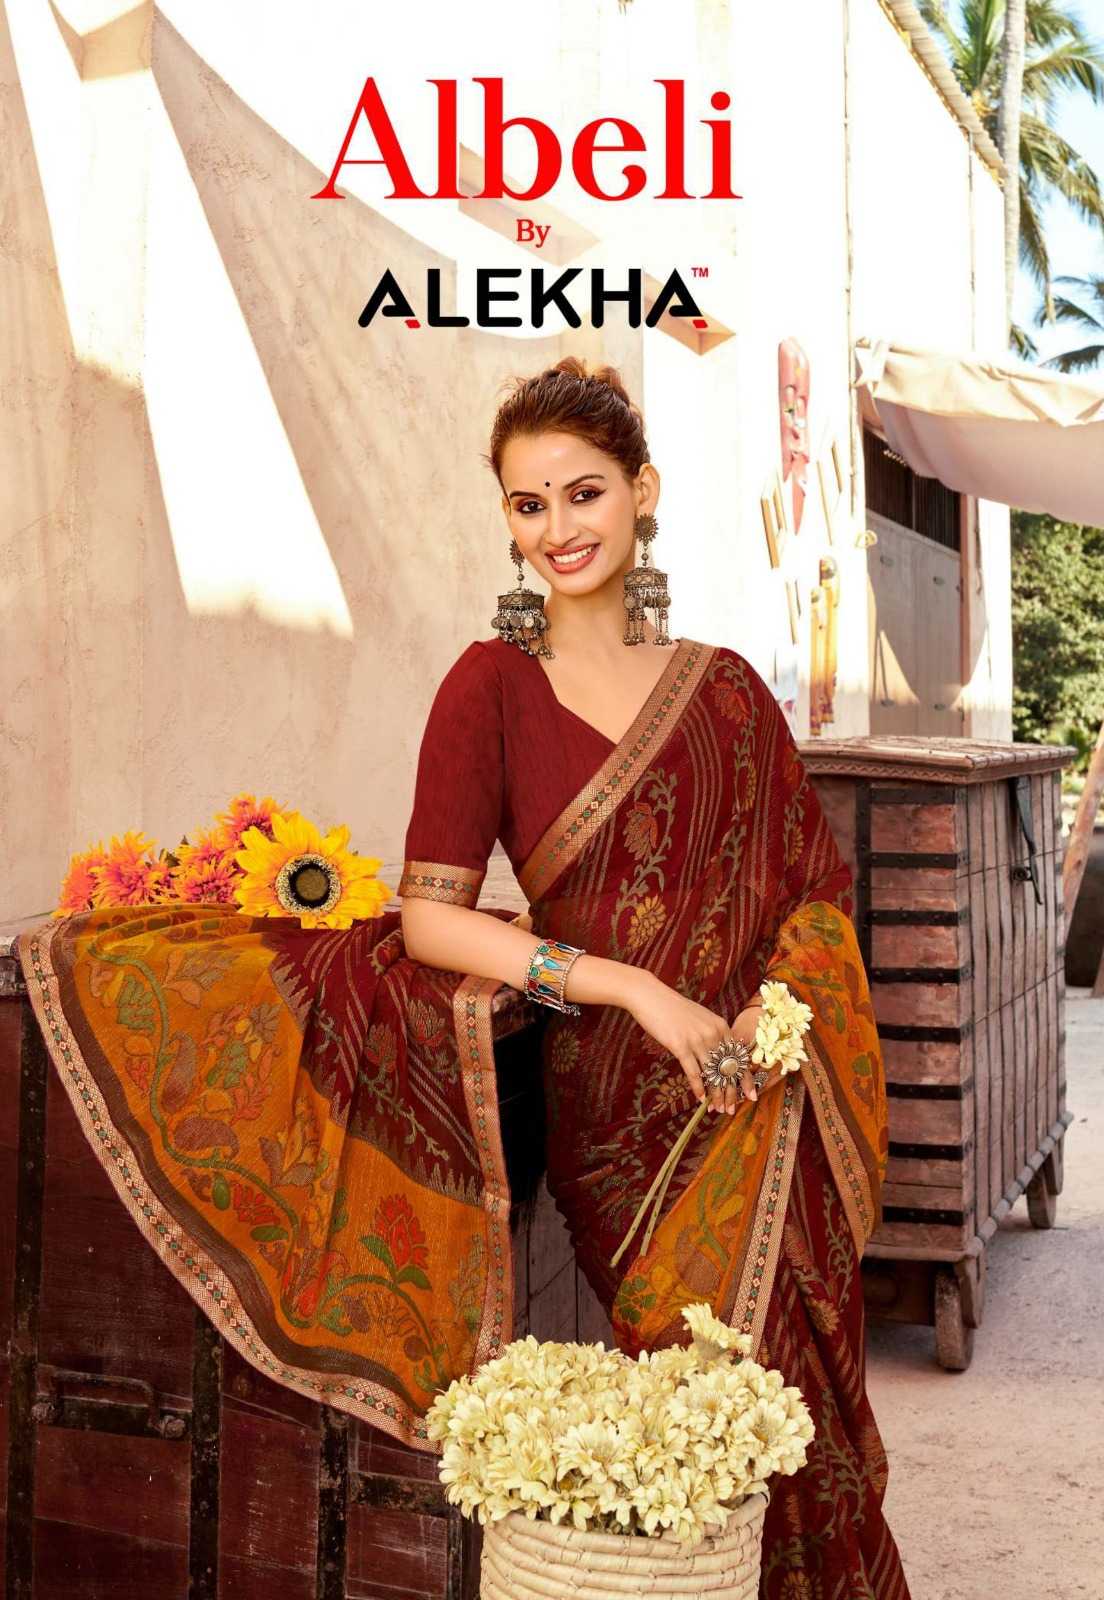 alekha albeli 27501-27508 fancy sarees wholesaler